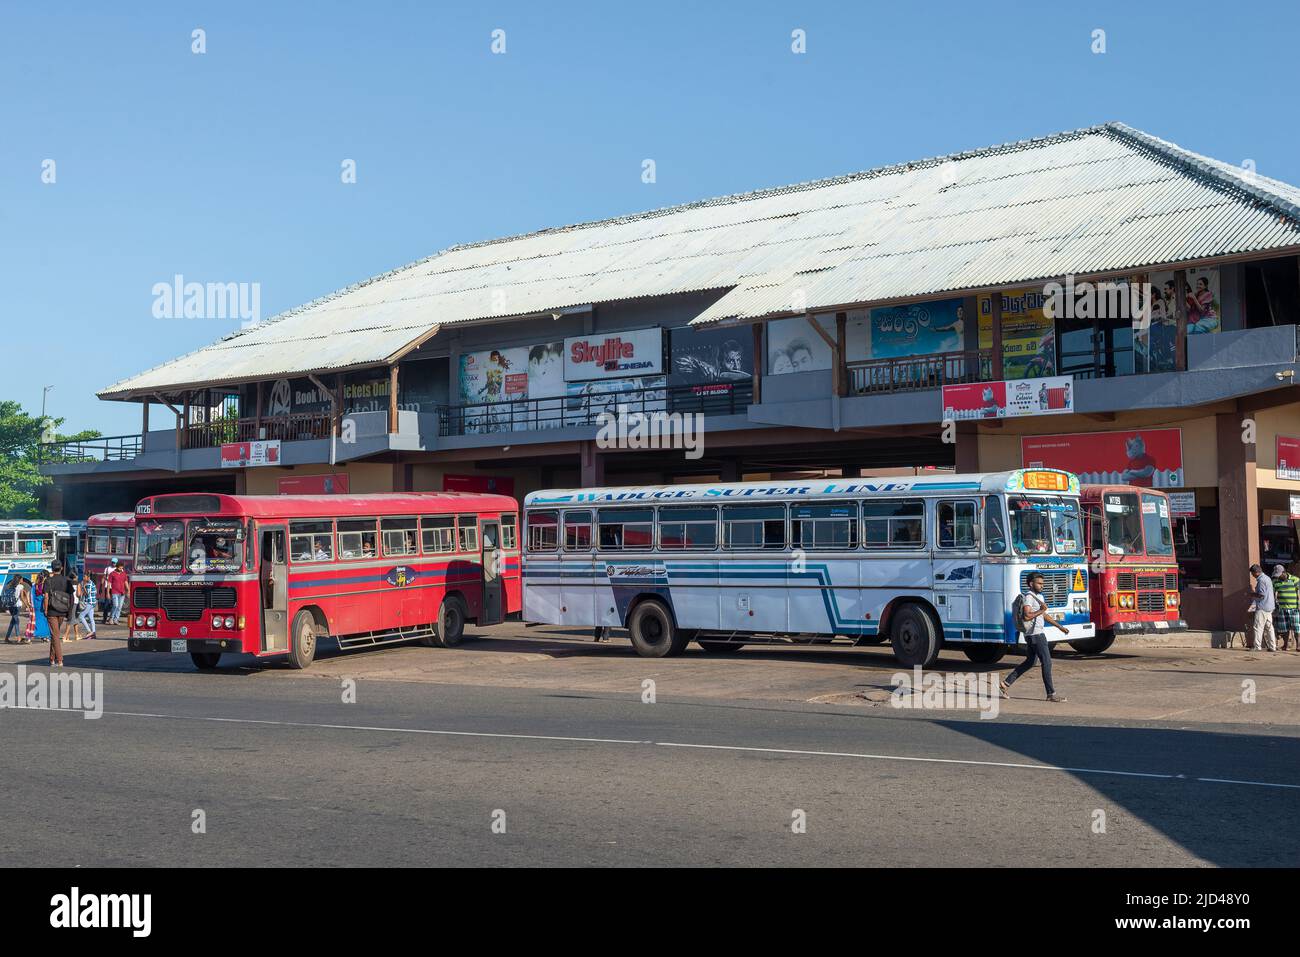 MATARA, SRI LANKA - FEBRUARY 17, 2020: View of the city bus station on a sunny day Stock Photo